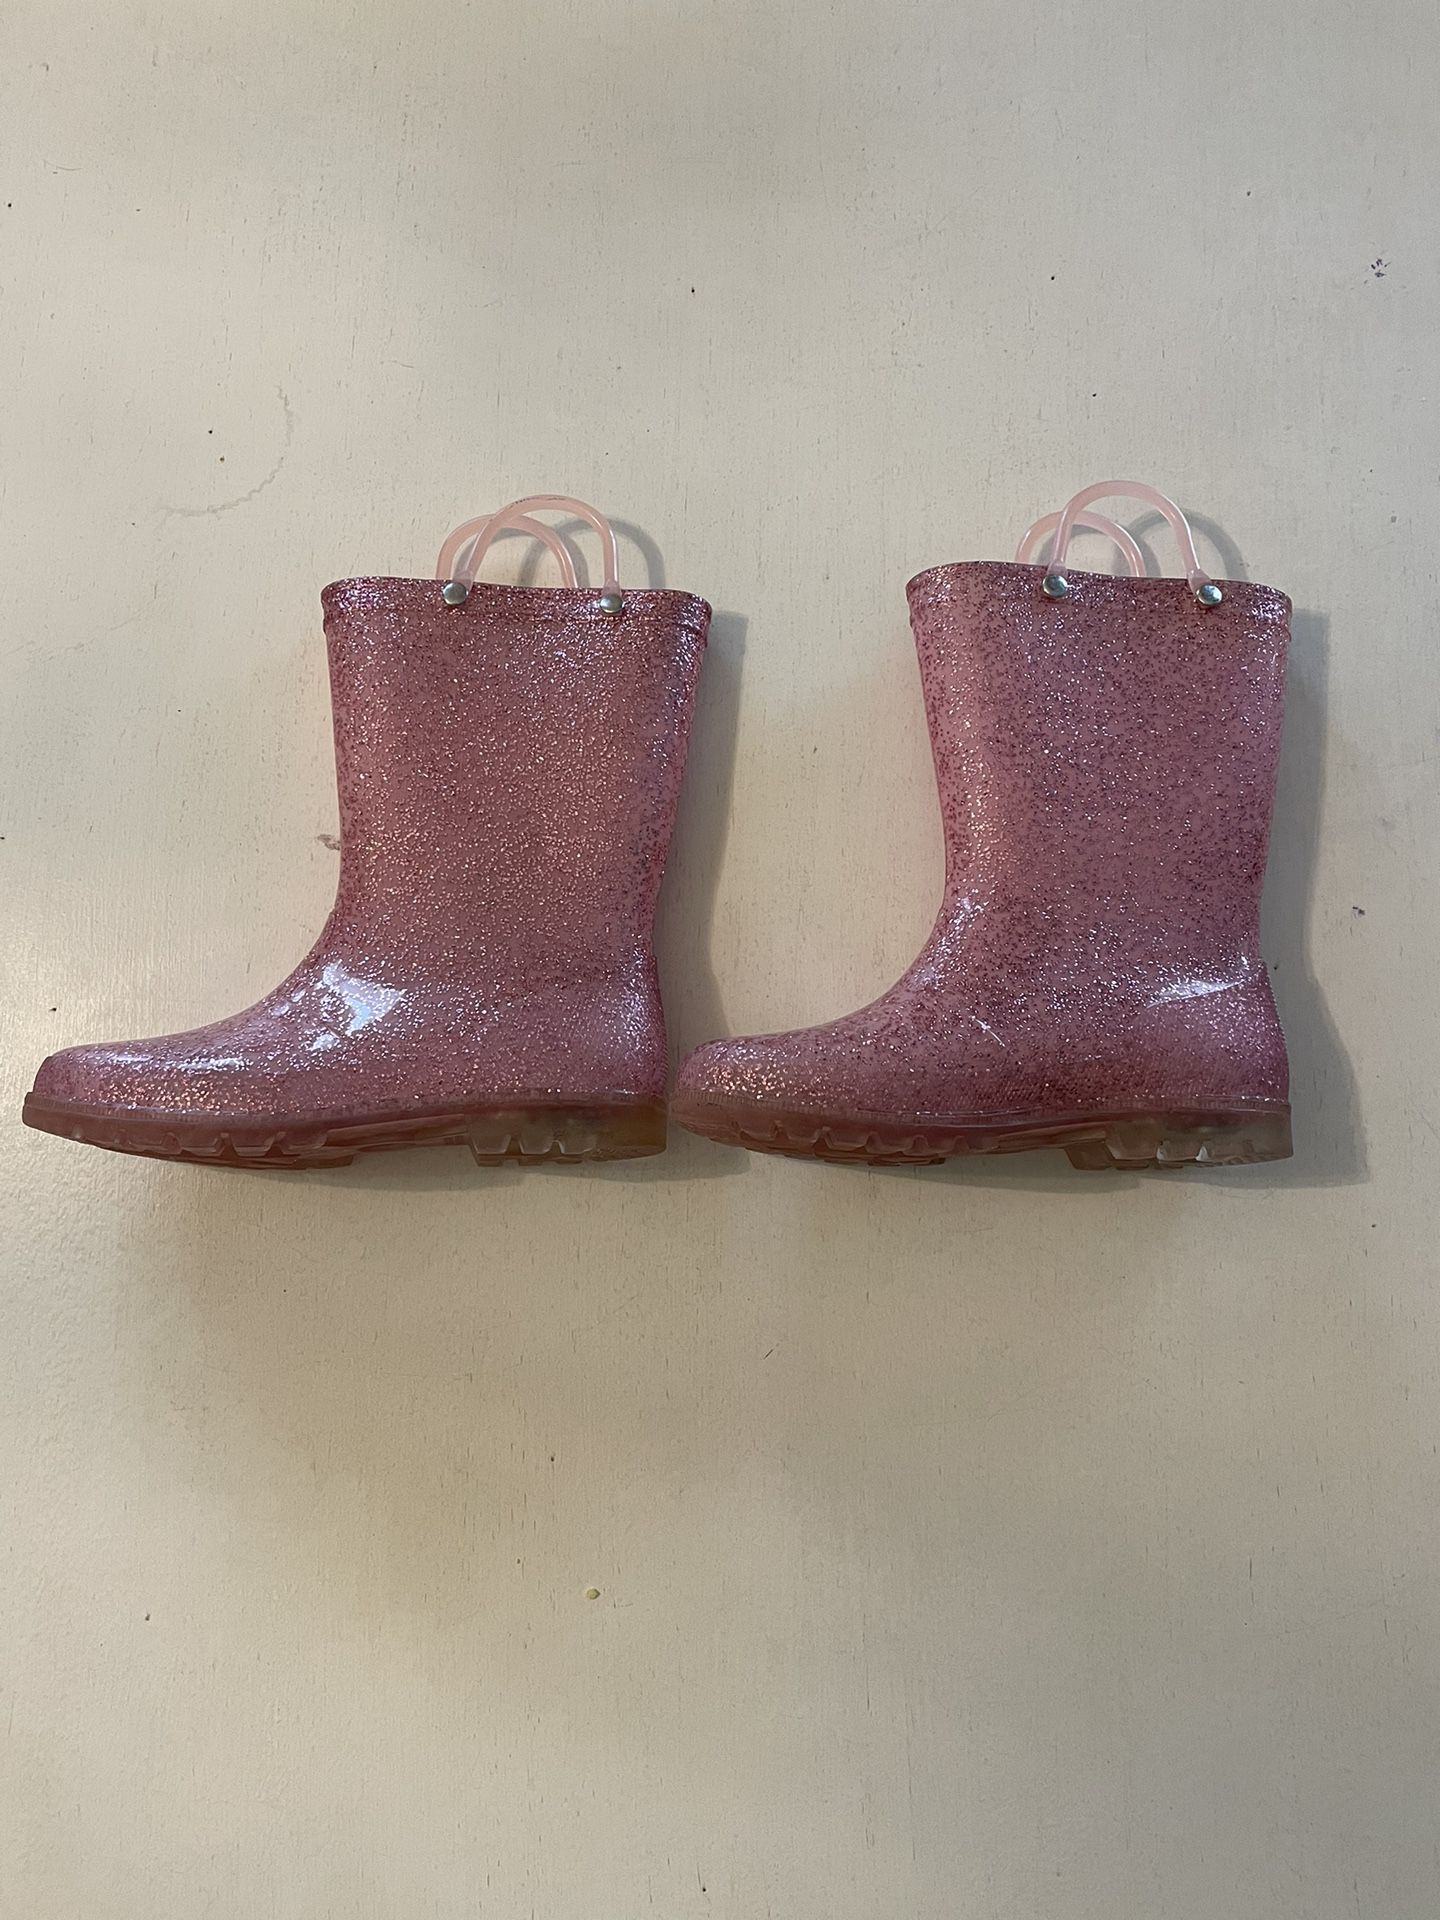 Girls Rain Boots Size 2